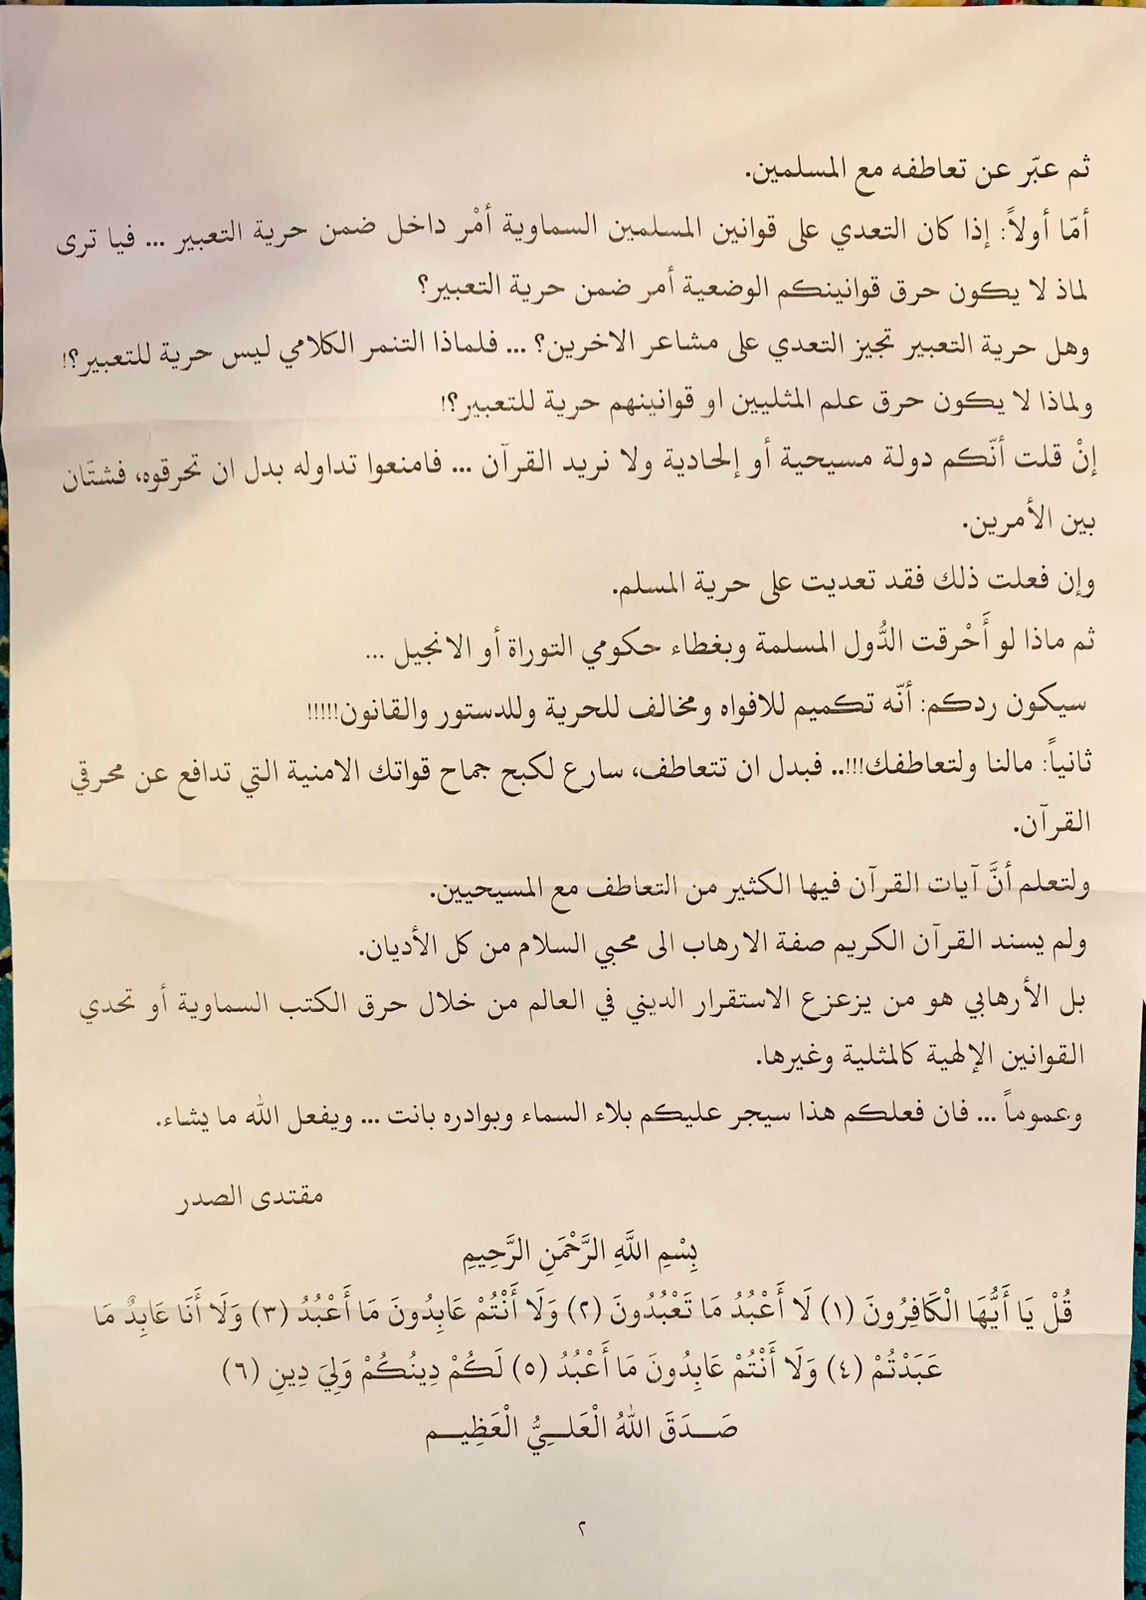 النص الكامل لخطبة الصدر في مسجد الكوفة بالنجف